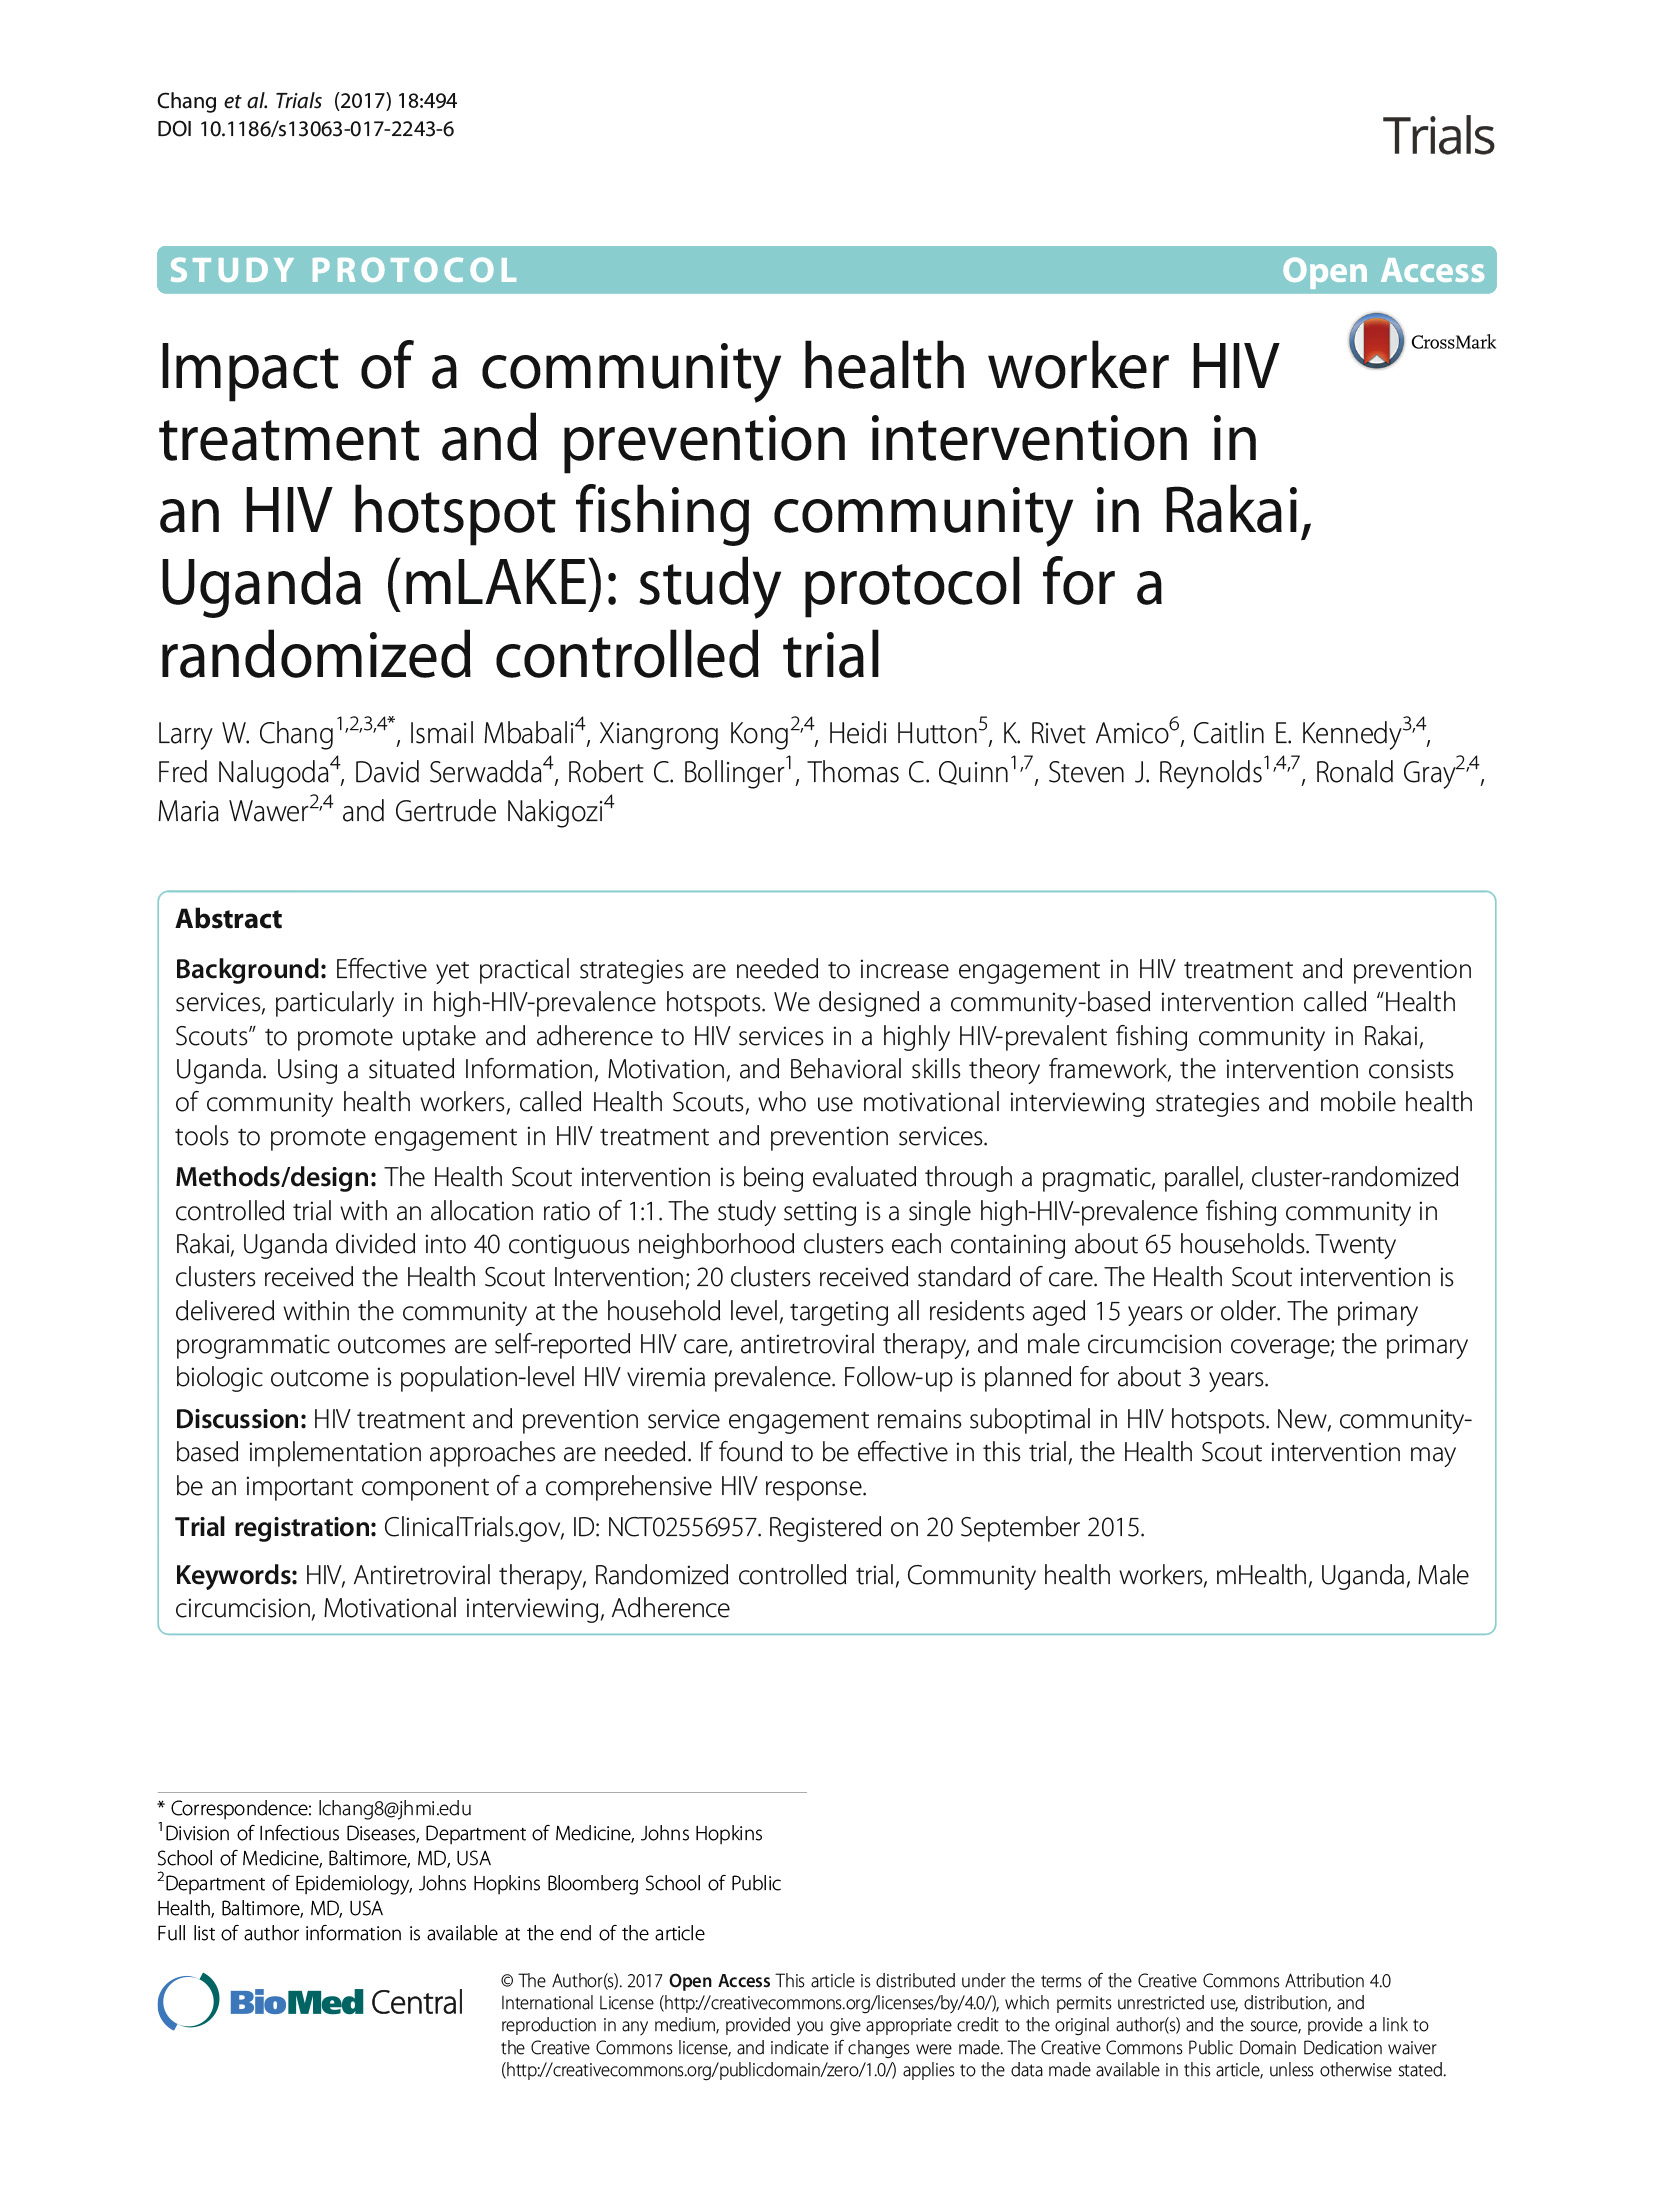 Impacto de uma intervenção de tratamento e prevenção do VIH por parte de um agente de saúde comunitário numa comunidade piscatória de Rakai, no Uganda (mLAKE): Protocolo de Estudo para um Ensaio Controlado Aleatório - capa